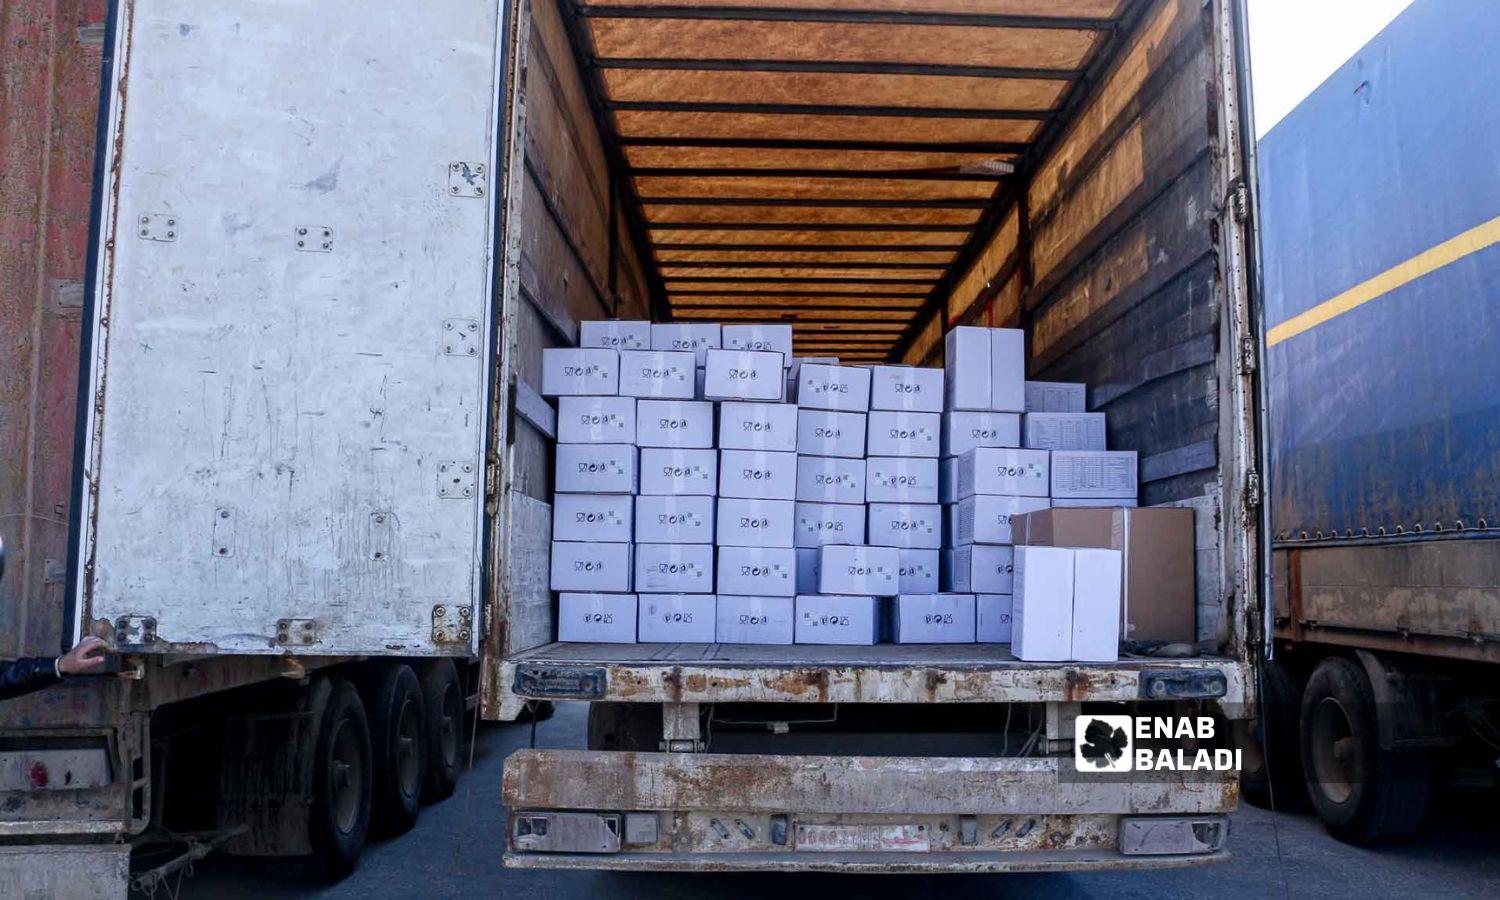 شاحنة تحمل سلات غذائية من الأمم المتحدة في معبر باب الهوى بإدلب - 10 شباط 2023 (عنب بلدي / محمد نعسان دبل)
